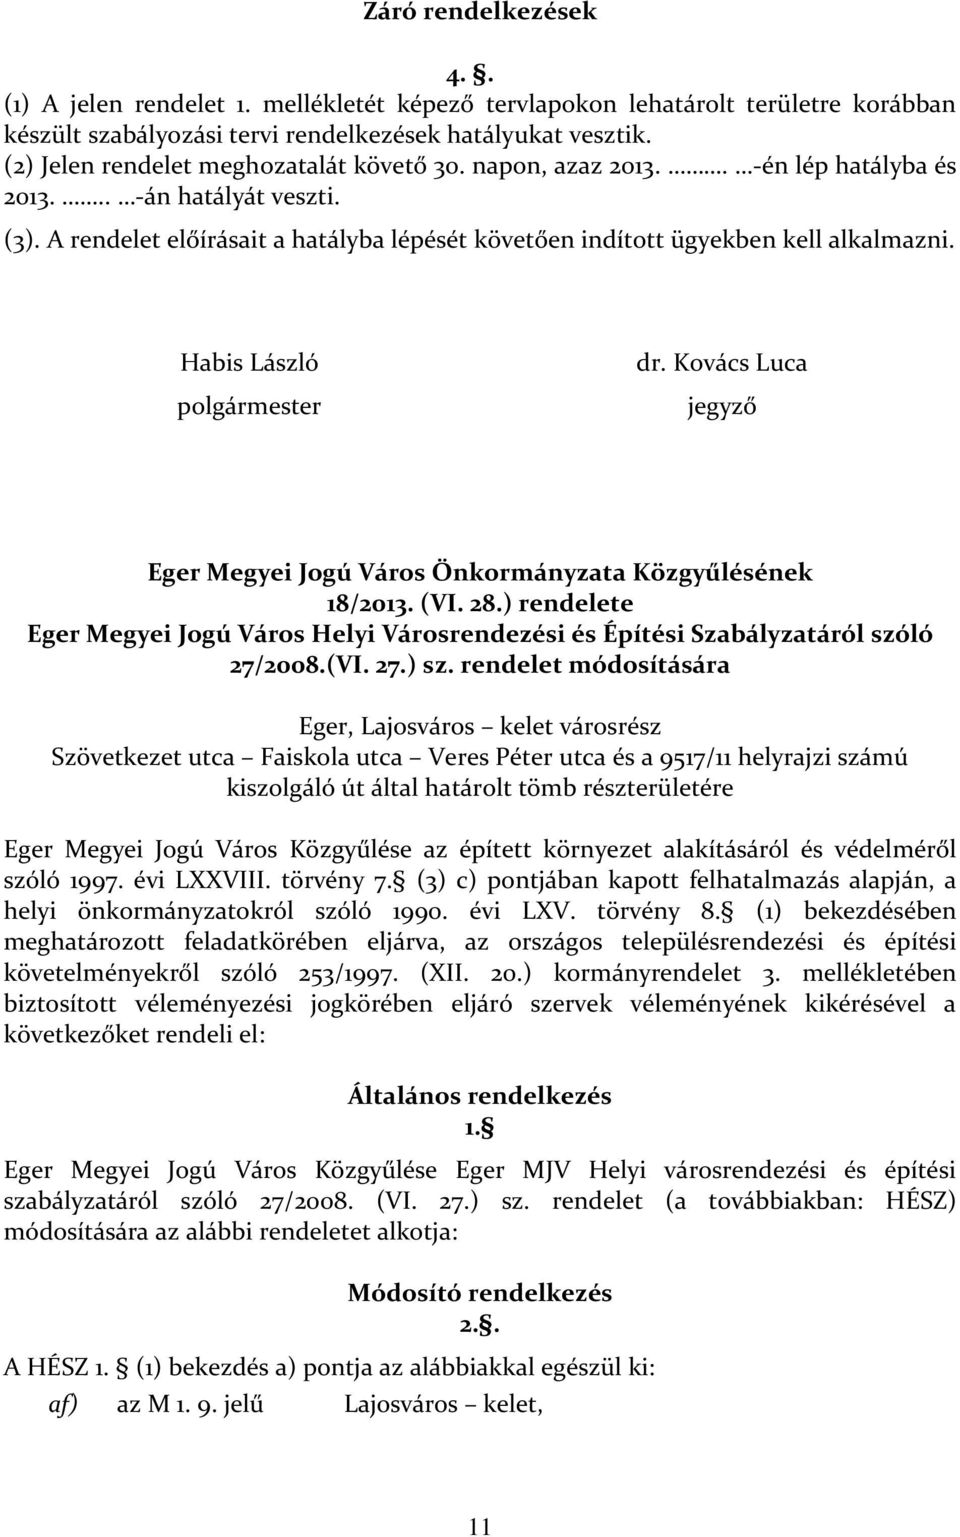 Habis László polgármester dr. Kovács Luca jegyző Eger Megyei Jogú Város Önkormányzata Közgyűlésének 18/2013. (VI. 28.